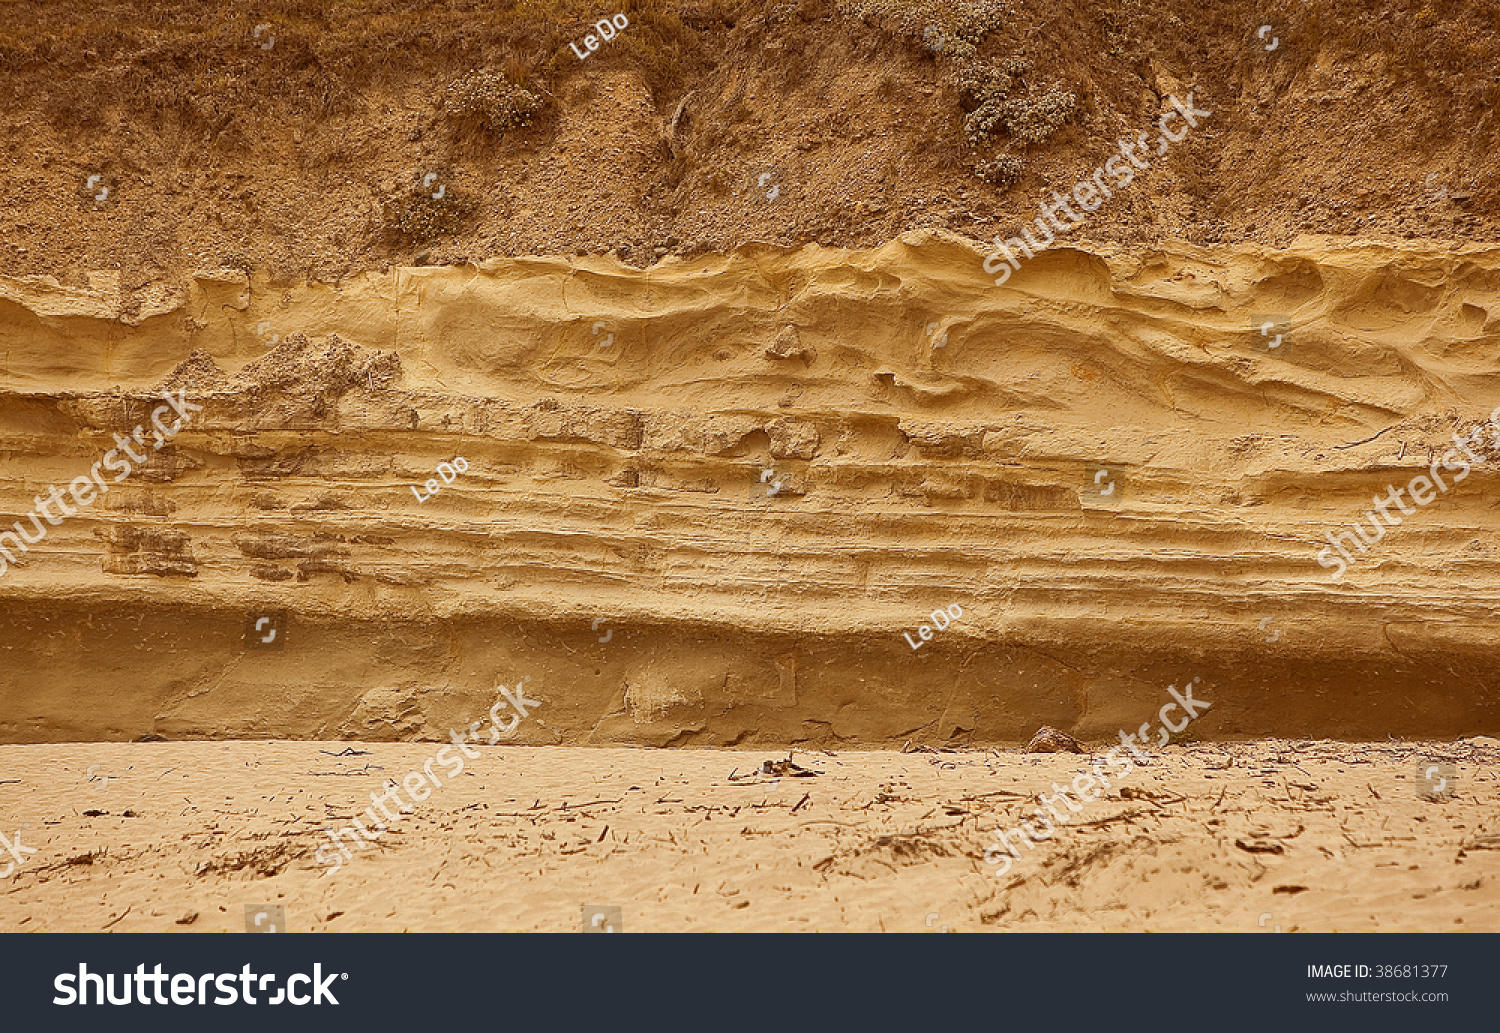 Песчаный грунт в разрезе